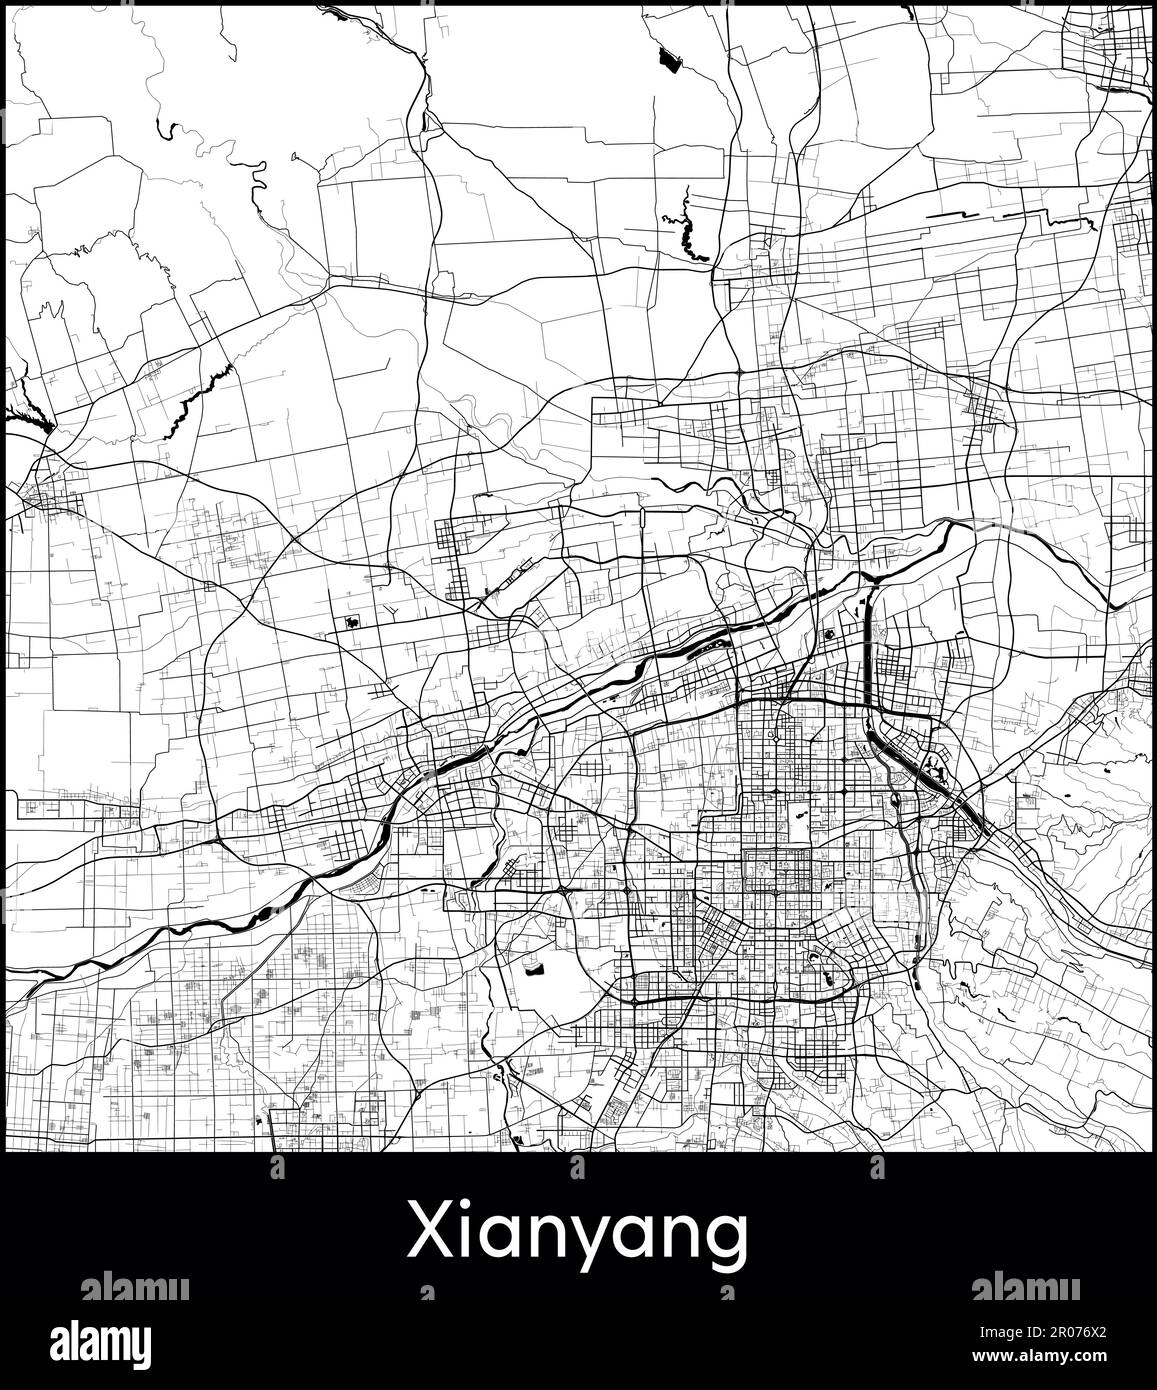 City Map Asia China Xianyang vector illustration Stock Vector Image ...